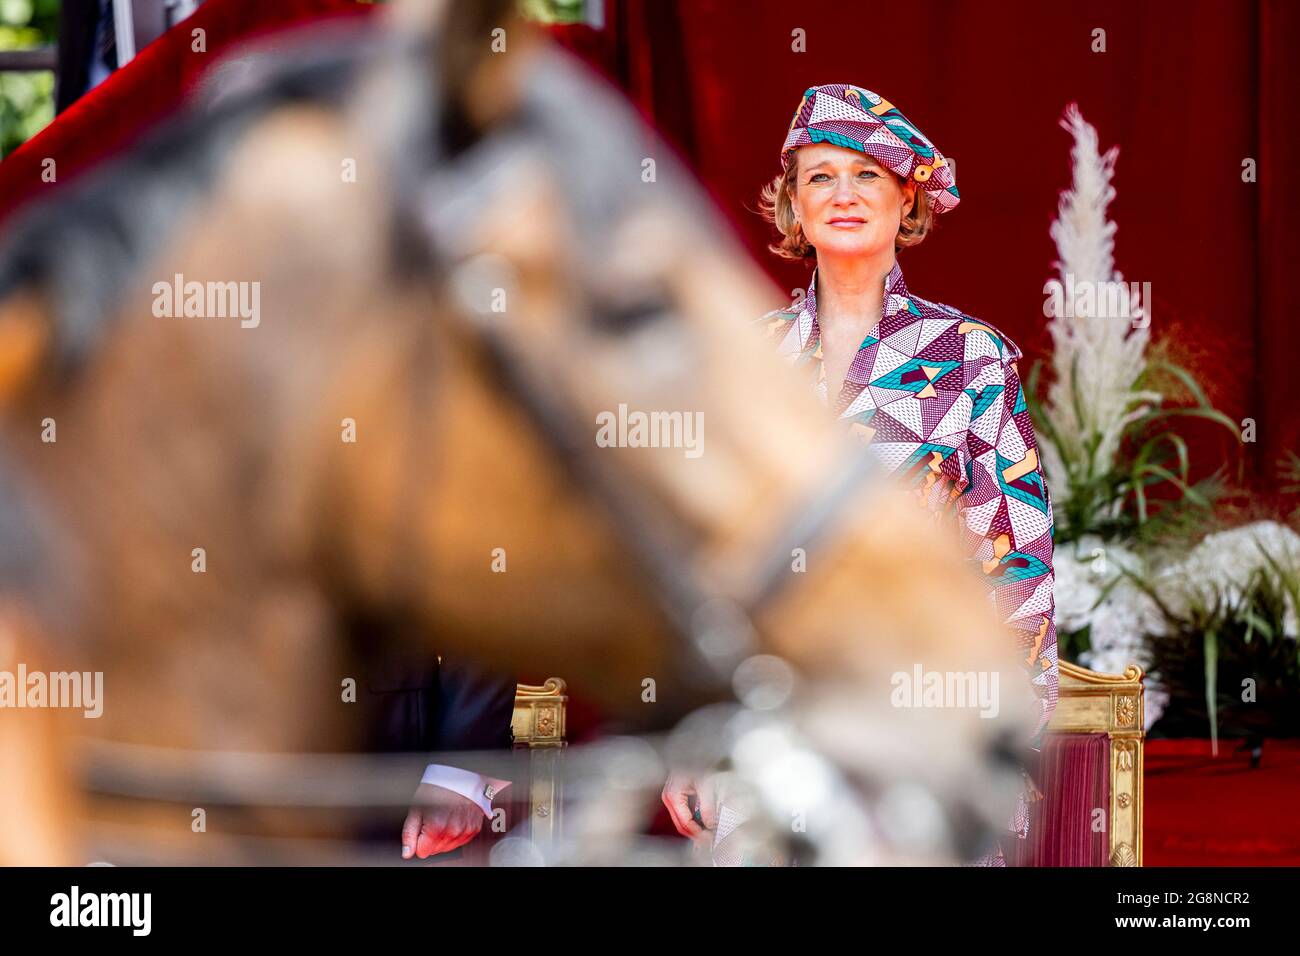 La princesse Delphine de Saxe-Cobourg et son mari Jim O'Hare assistent au défilé militaire lors de la Journée nationale le 21 juillet 2021 à Bruxelles, Belgique.Robin utrecht photo par Robin Utrecht/ABACAPRESS.COM Banque D'Images